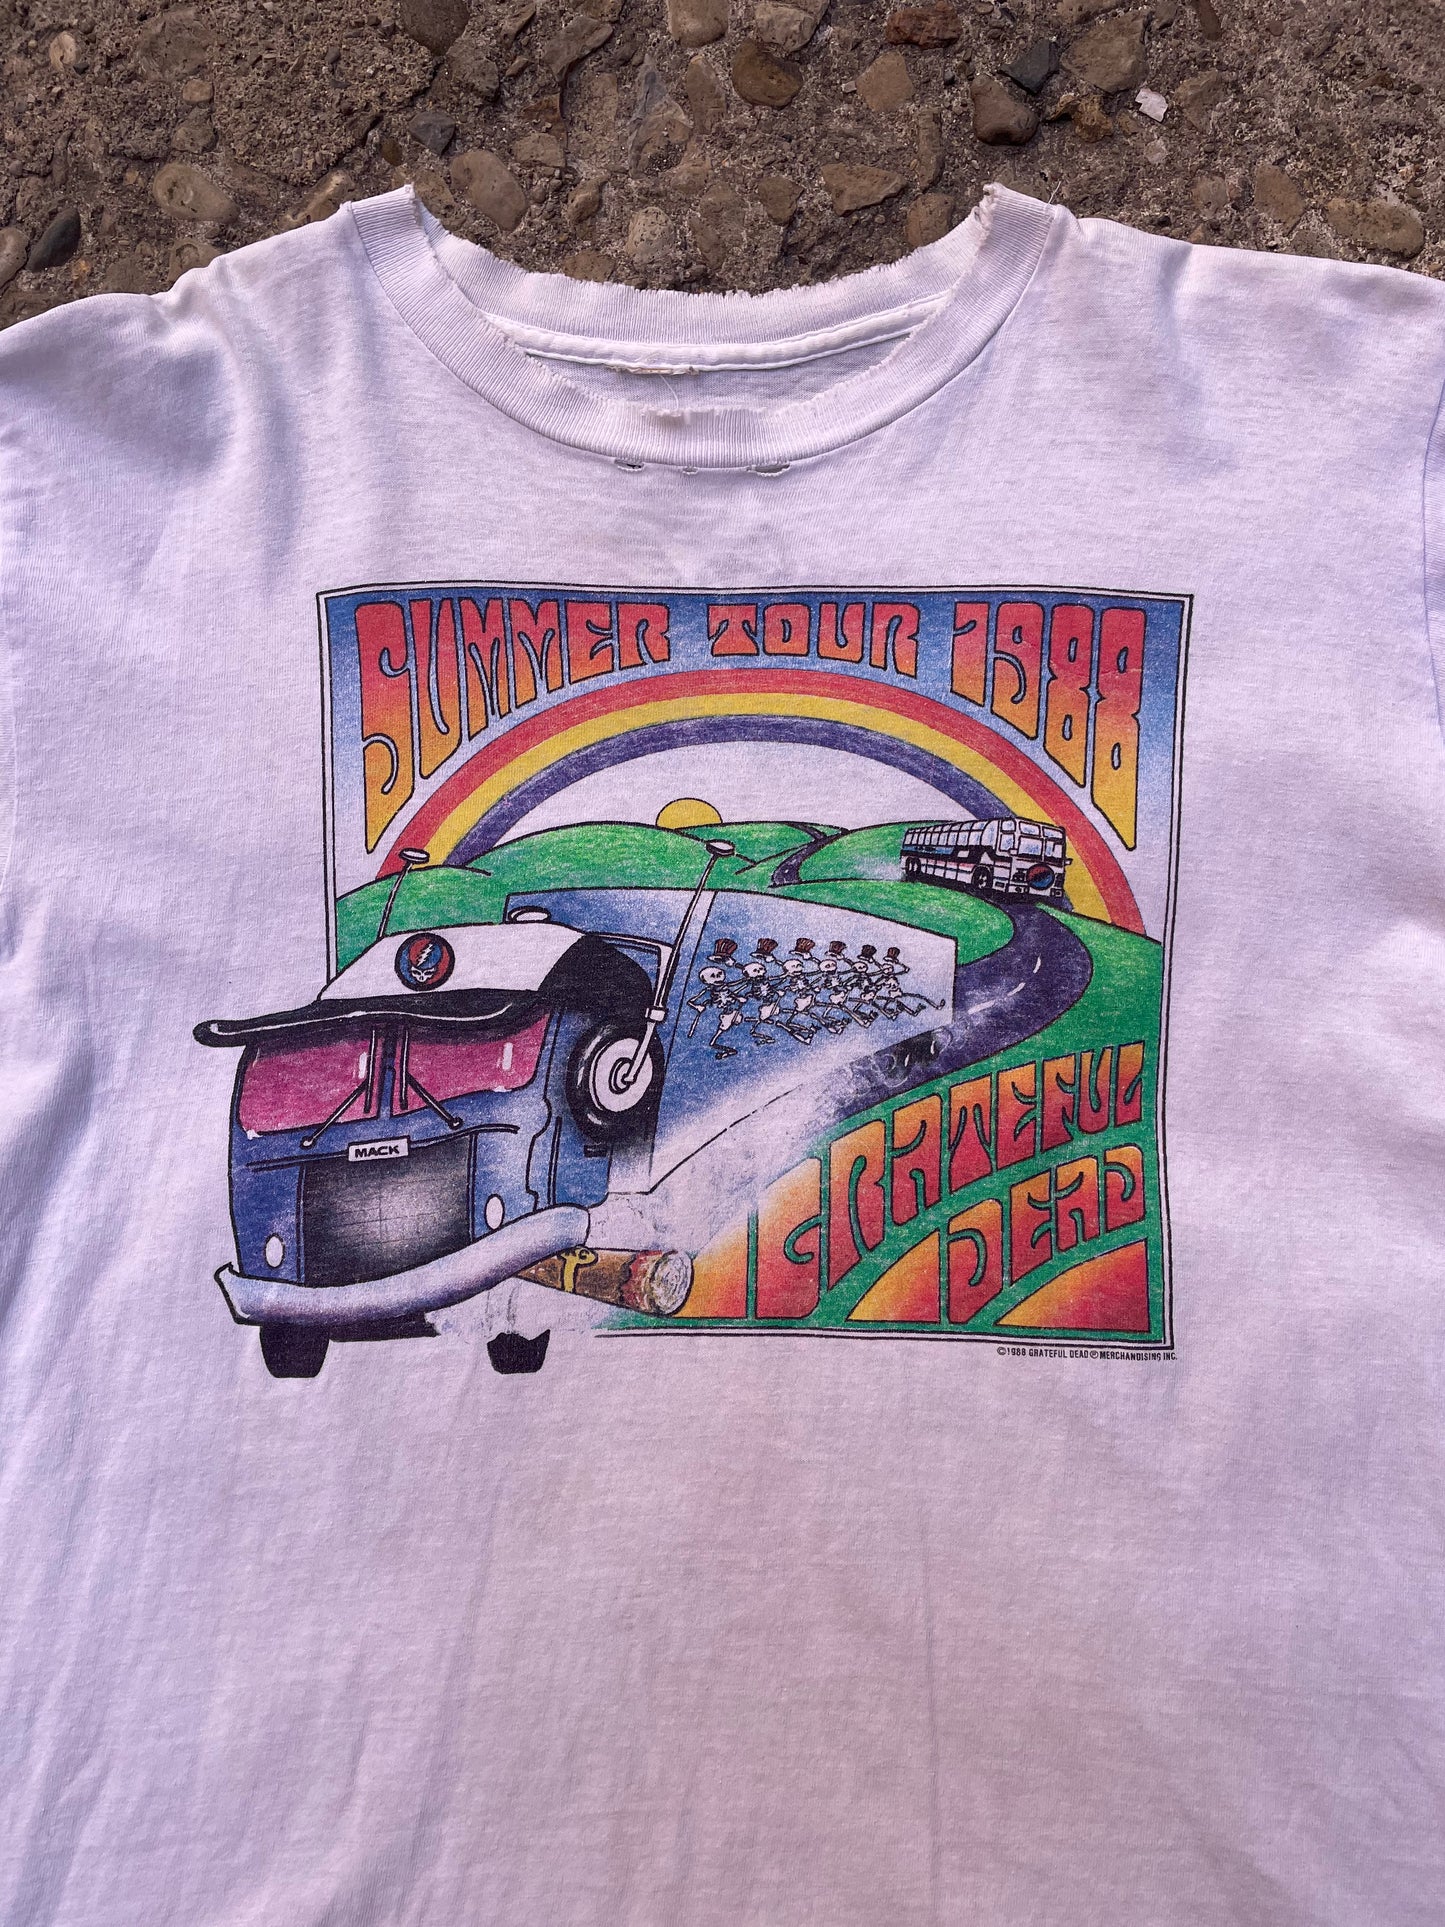 1988 Grateful Dead Summer Tour Band T-Shirt - L